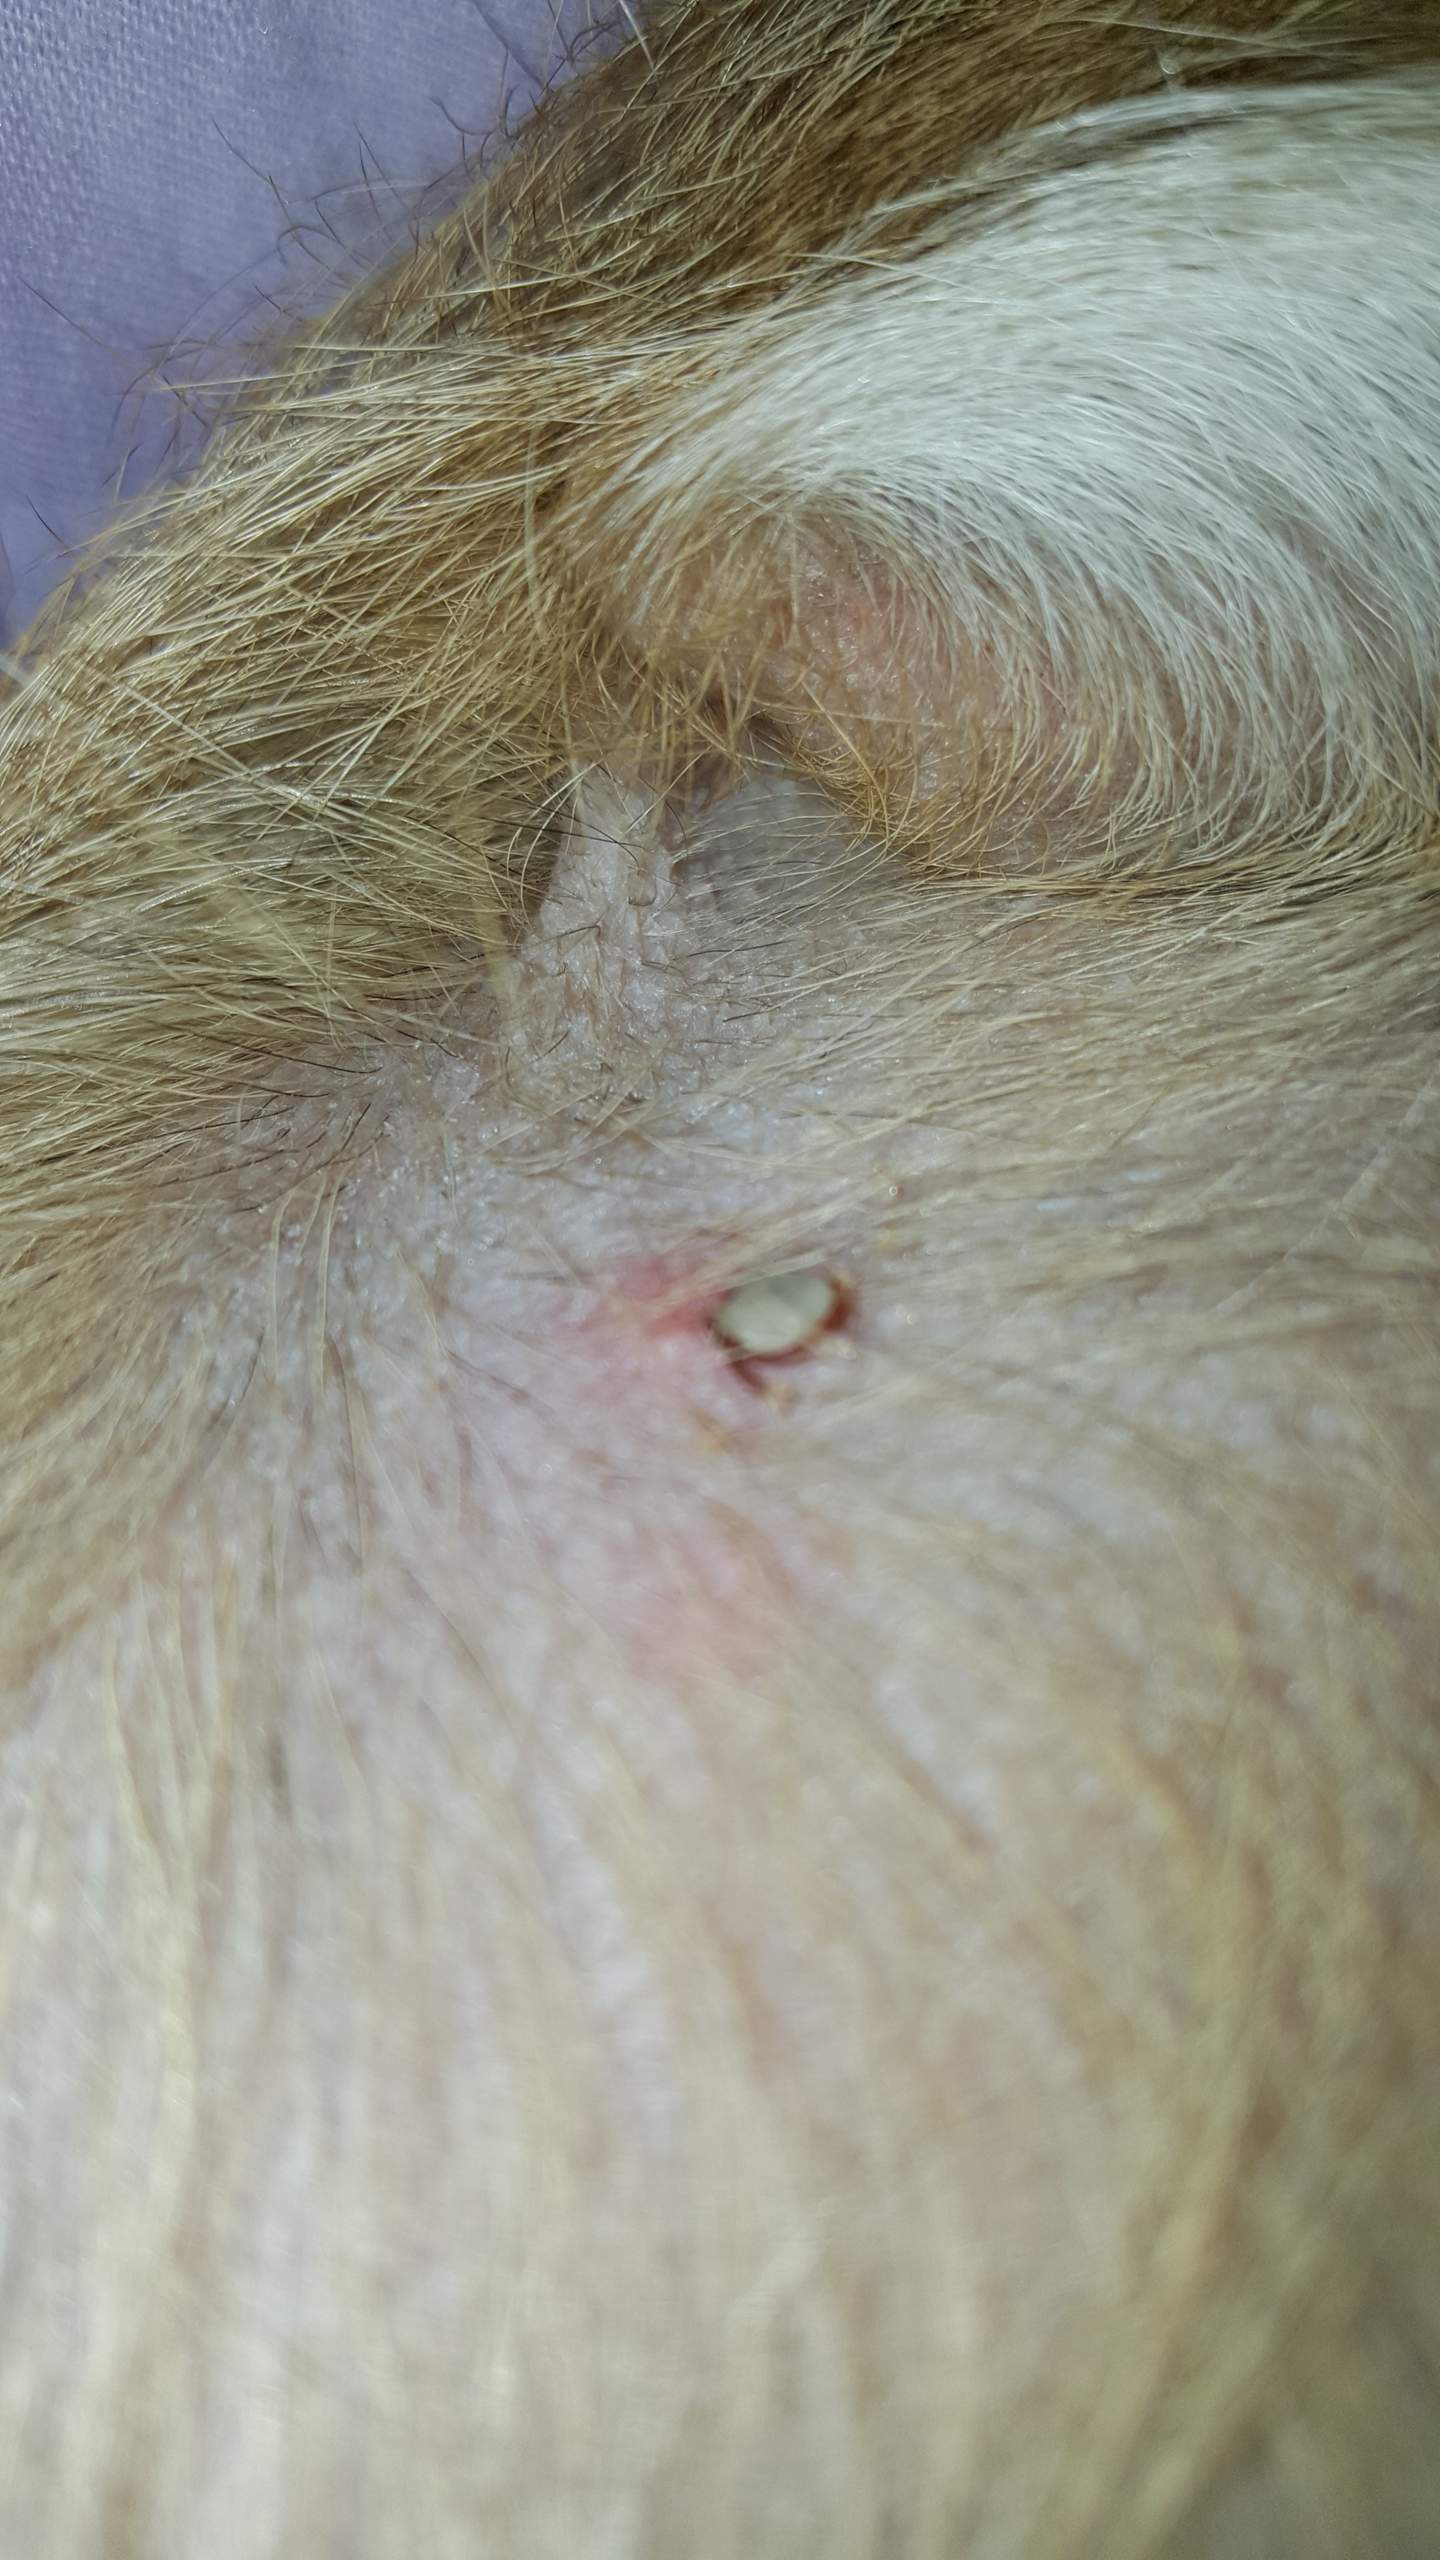 Mein Hund wurde von einer Zecke gebissen aber ich glaube der Kopf